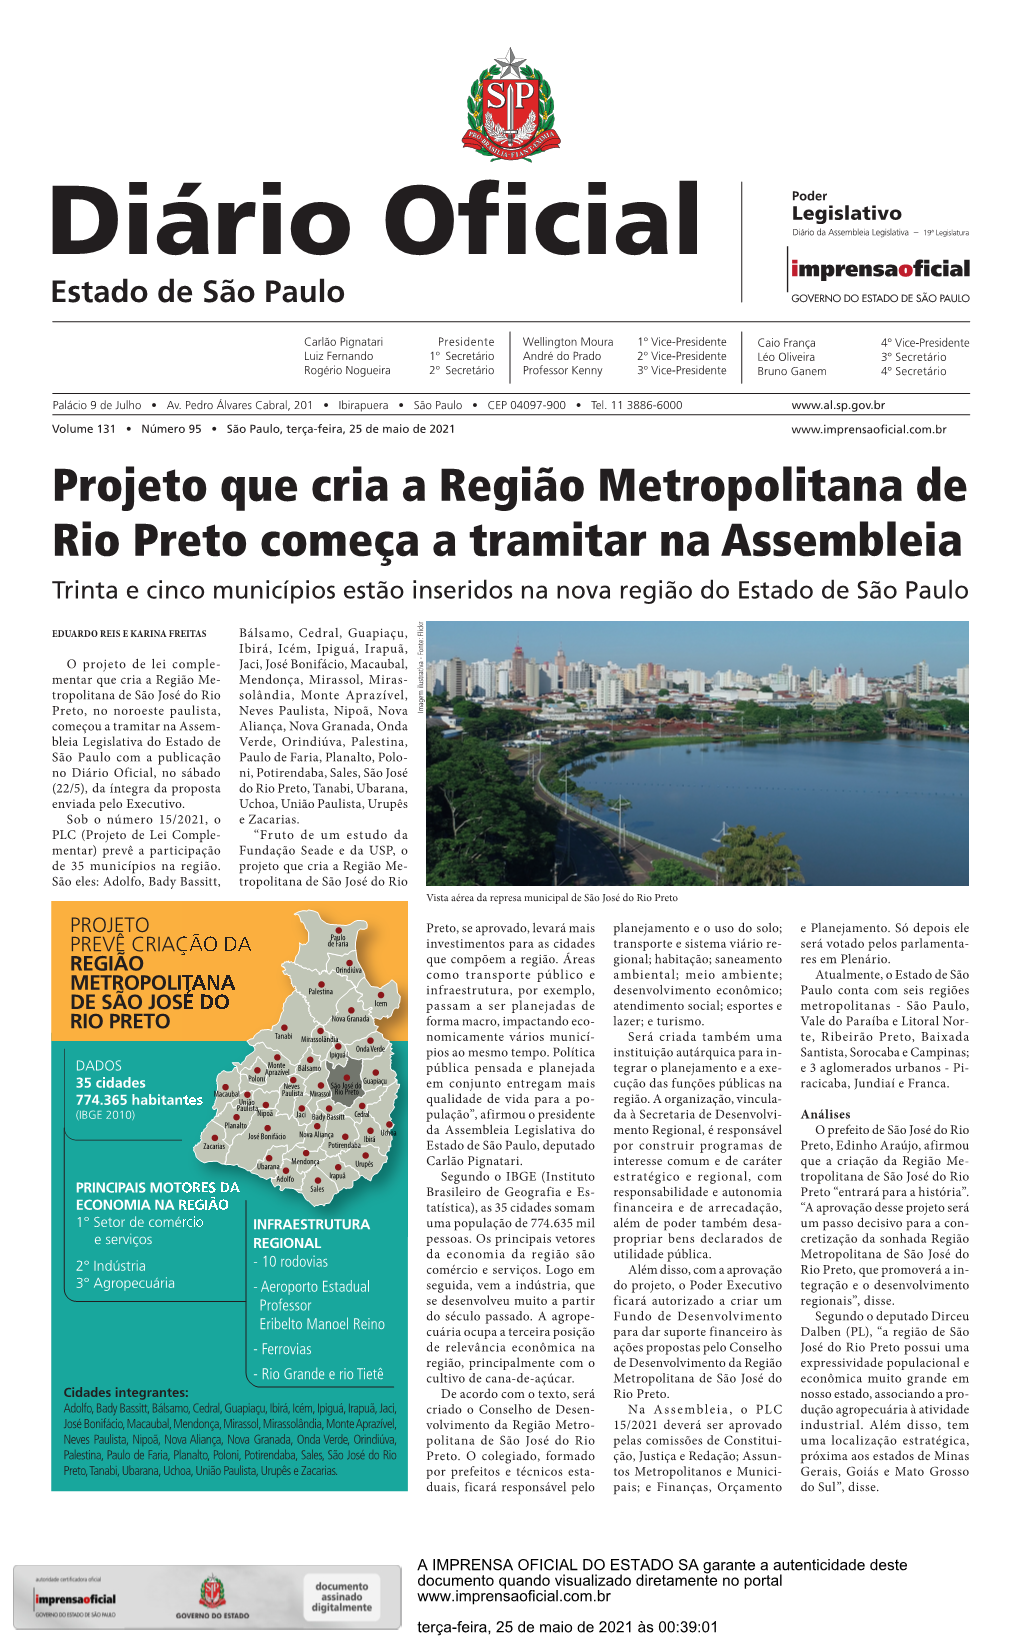 Projeto Que Cria a Região Metropolitana De Rio Preto Começa a Tramitar Na Assembleia Trinta E Cinco Municípios Estão Inseridos Na Nova Região Do Estado De São Paulo